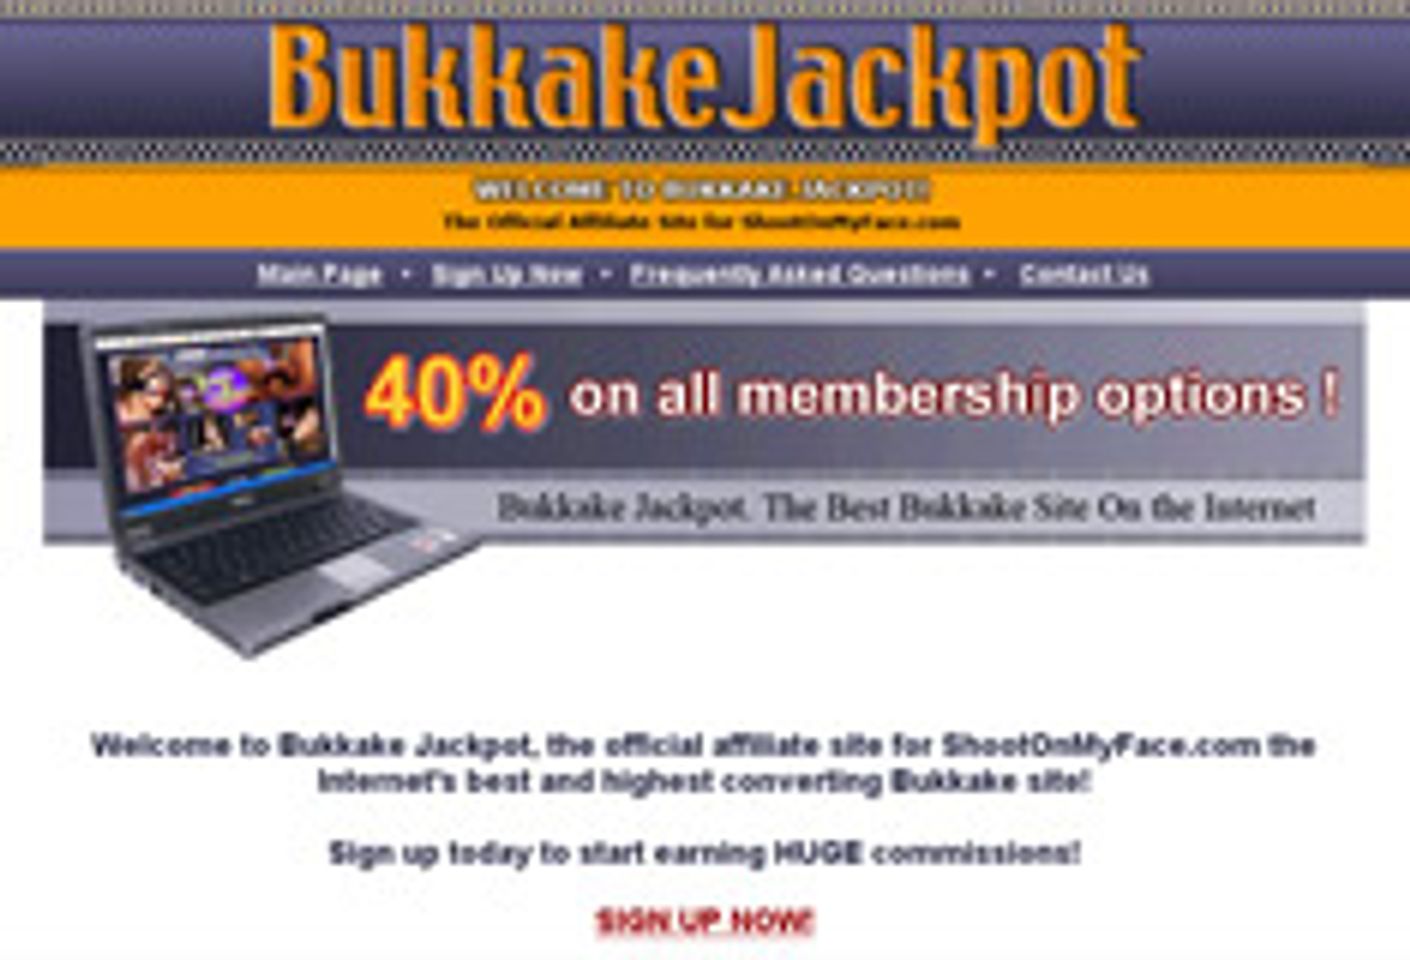 Bukkake Abound: Bukkake Jackpot and ShootOnMyFace.com